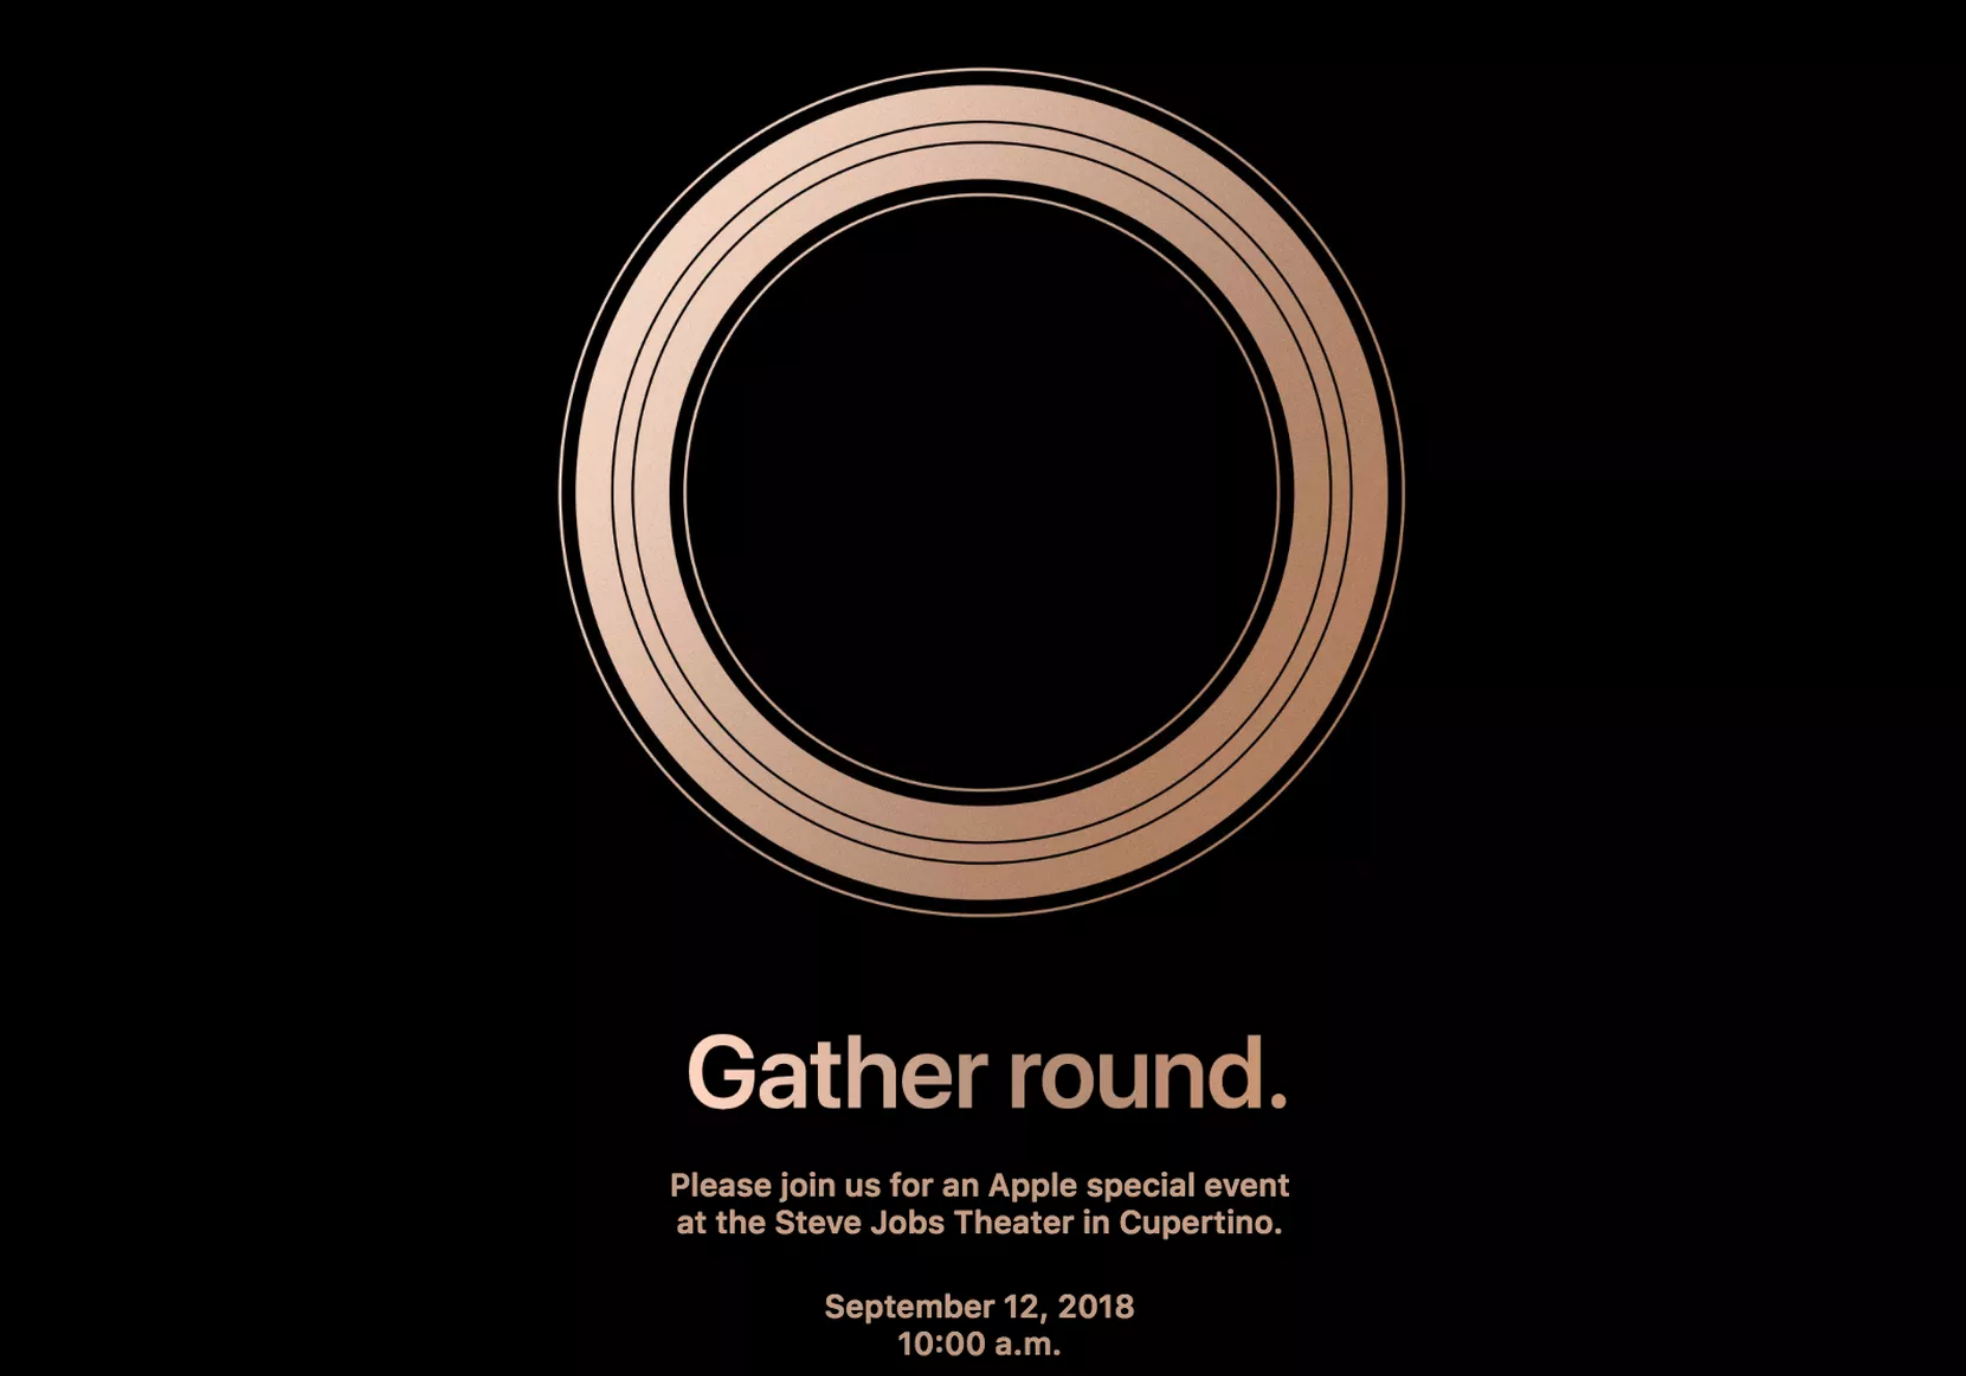 apple keynote invitation